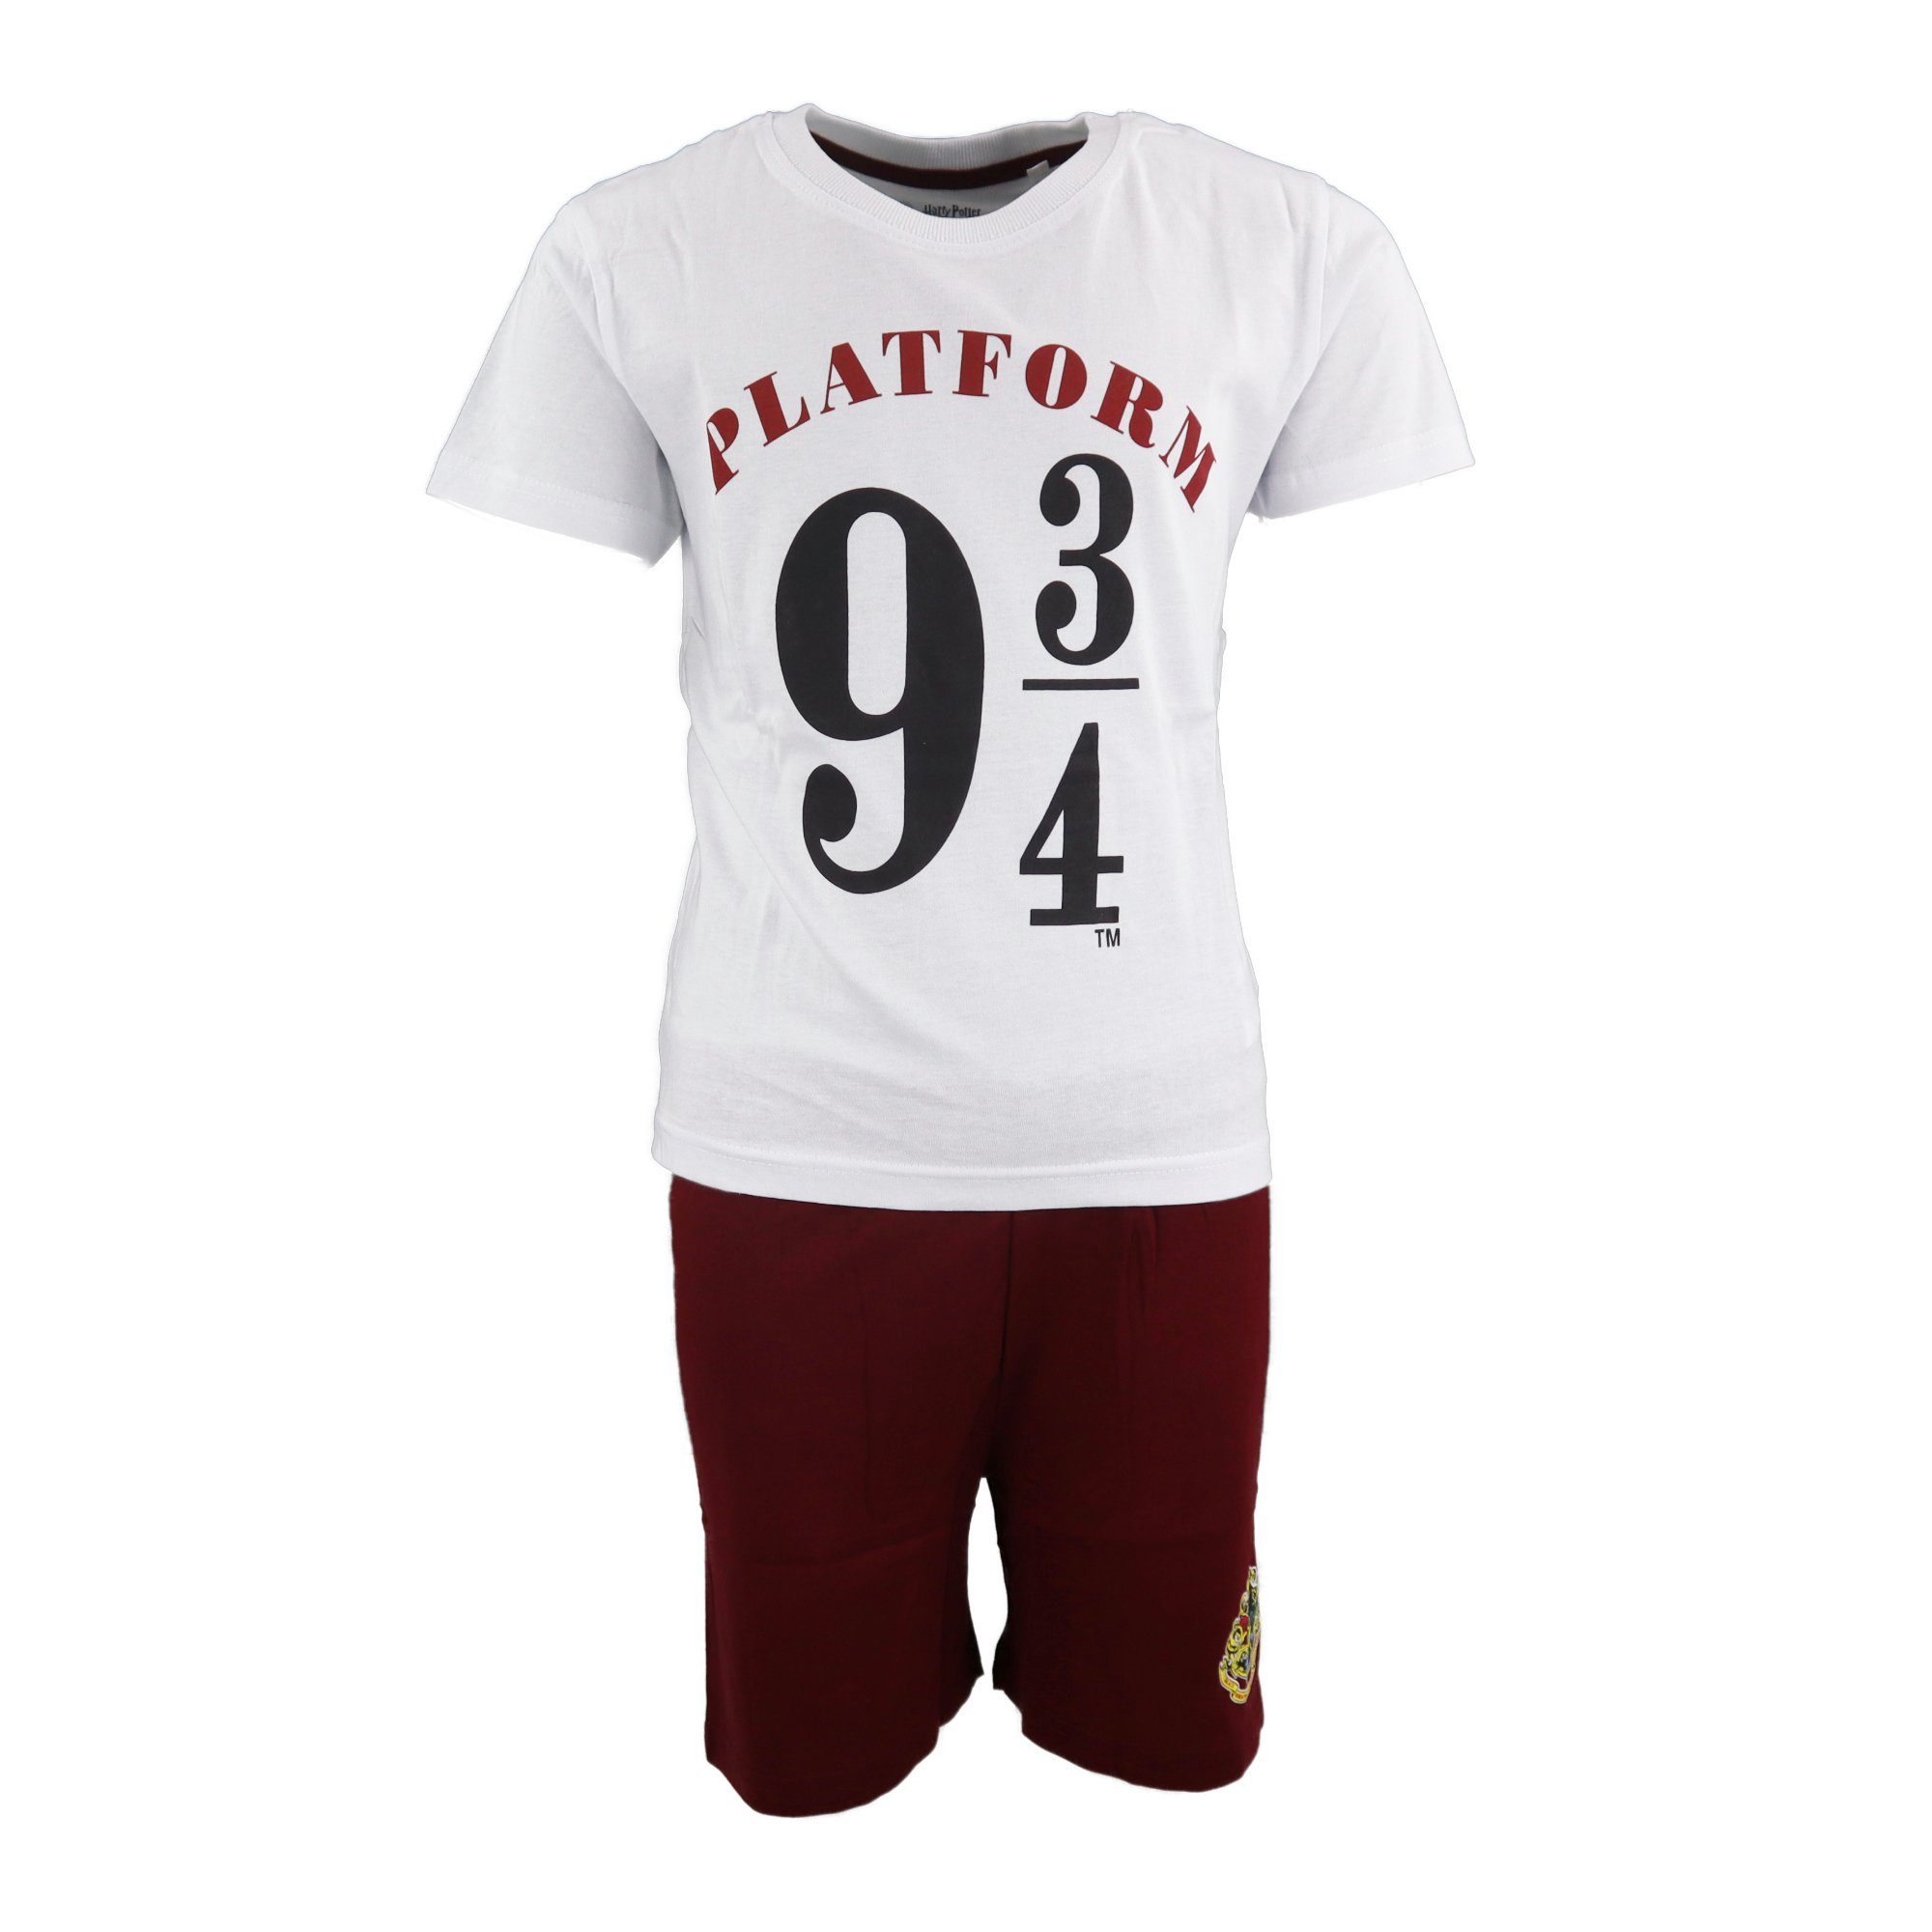 Harry Potter Schlafanzug Harry Potter Platform 9 3/4 kurzarm Pyjama Gr. 134 bis 164, Braun oder Weiß 100% Baumwolle